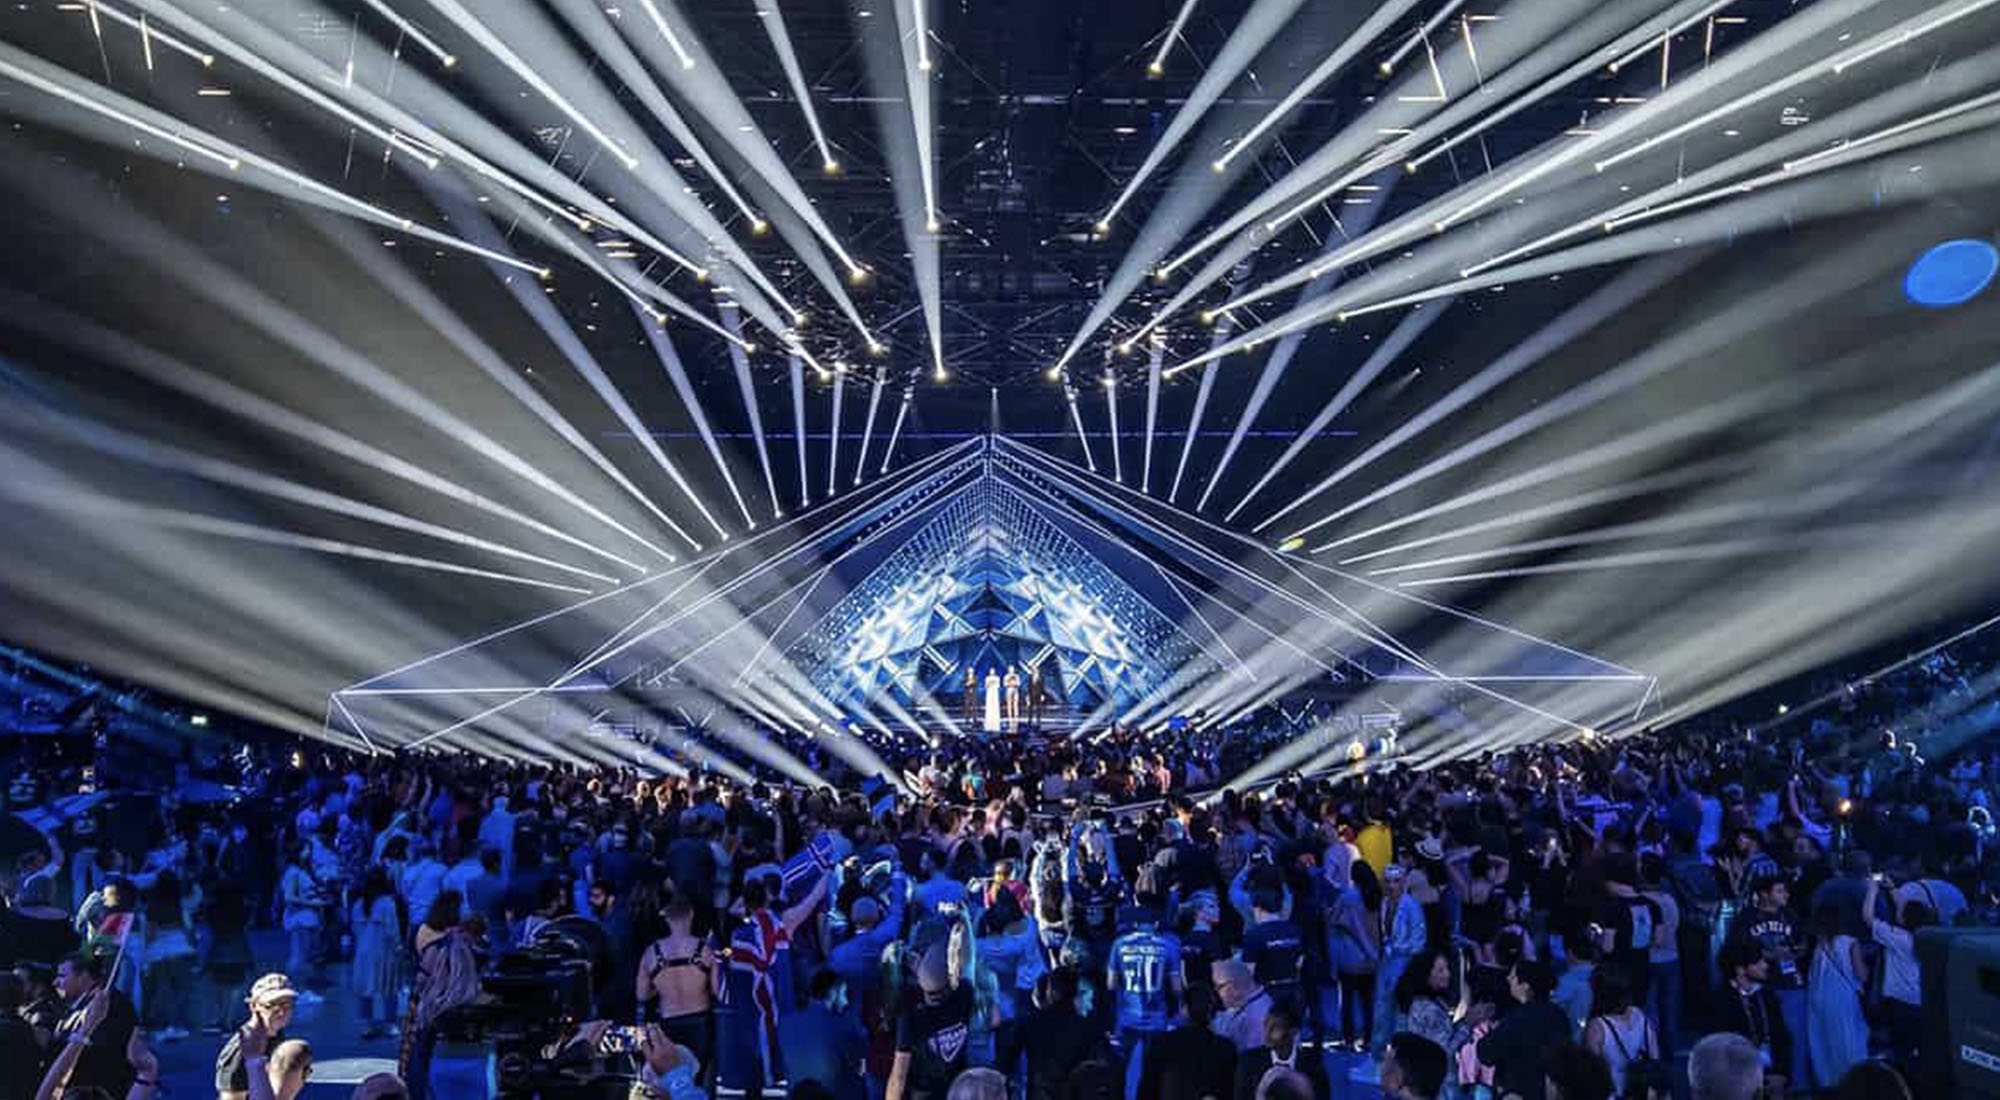 Escenario del Festival de Eurovisión 2019, celebrado en Tel Aviv (Israel)